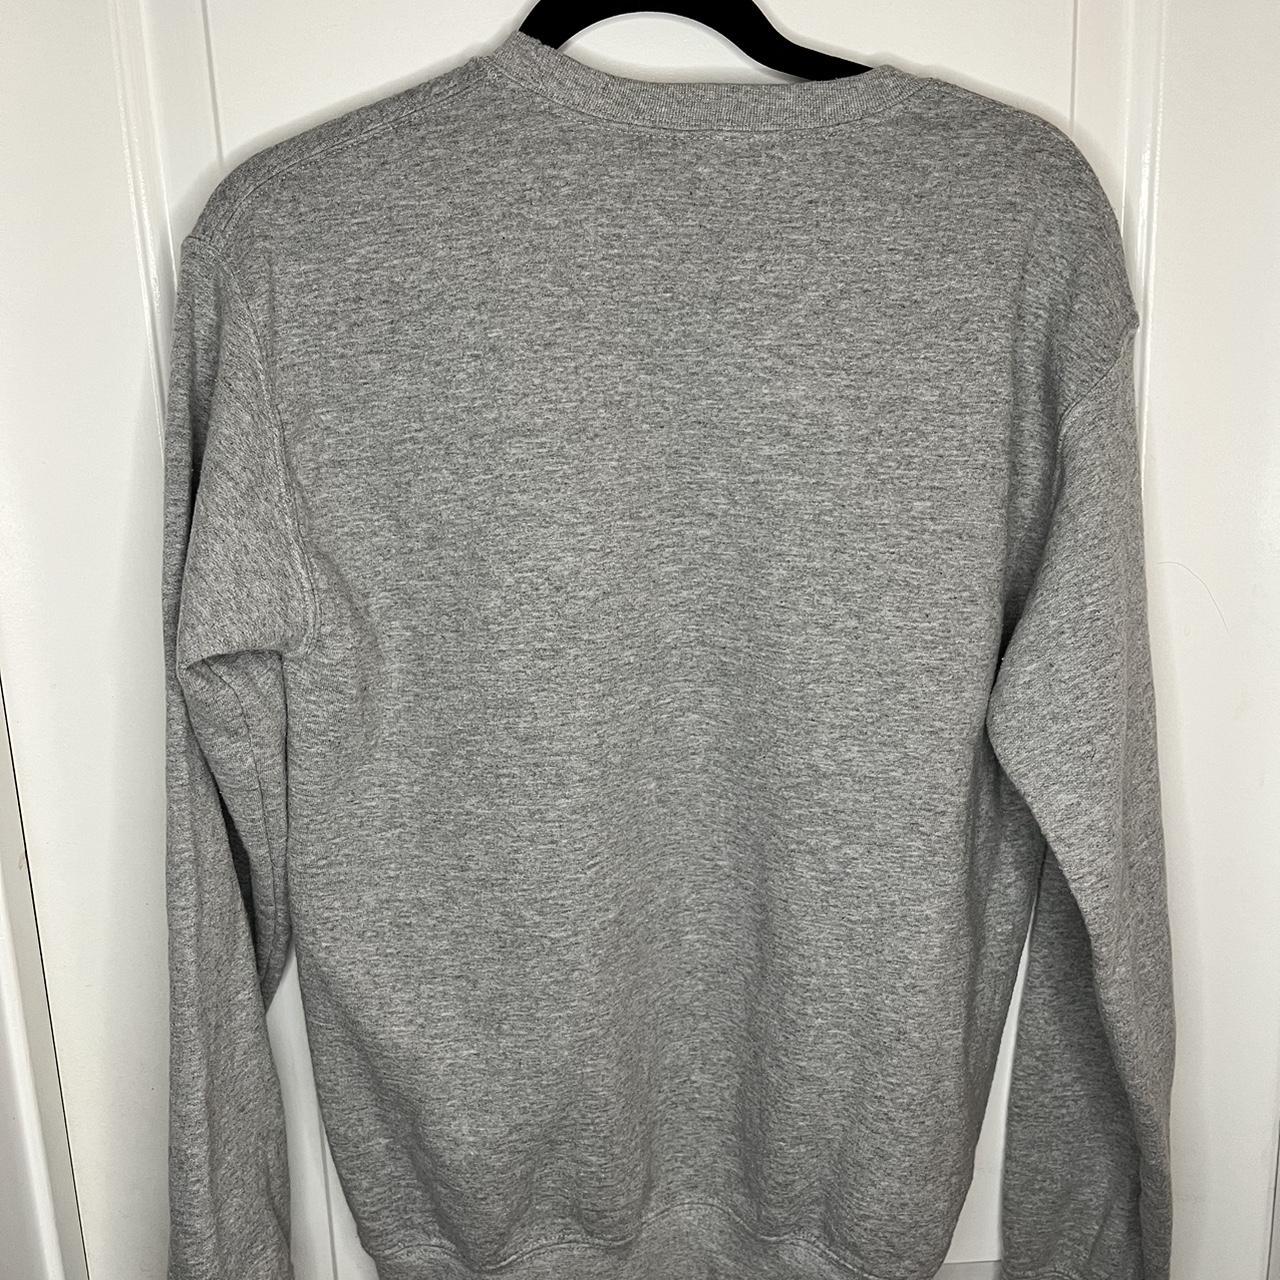 Ariana Grande Women's Grey Sweatshirt | Depop